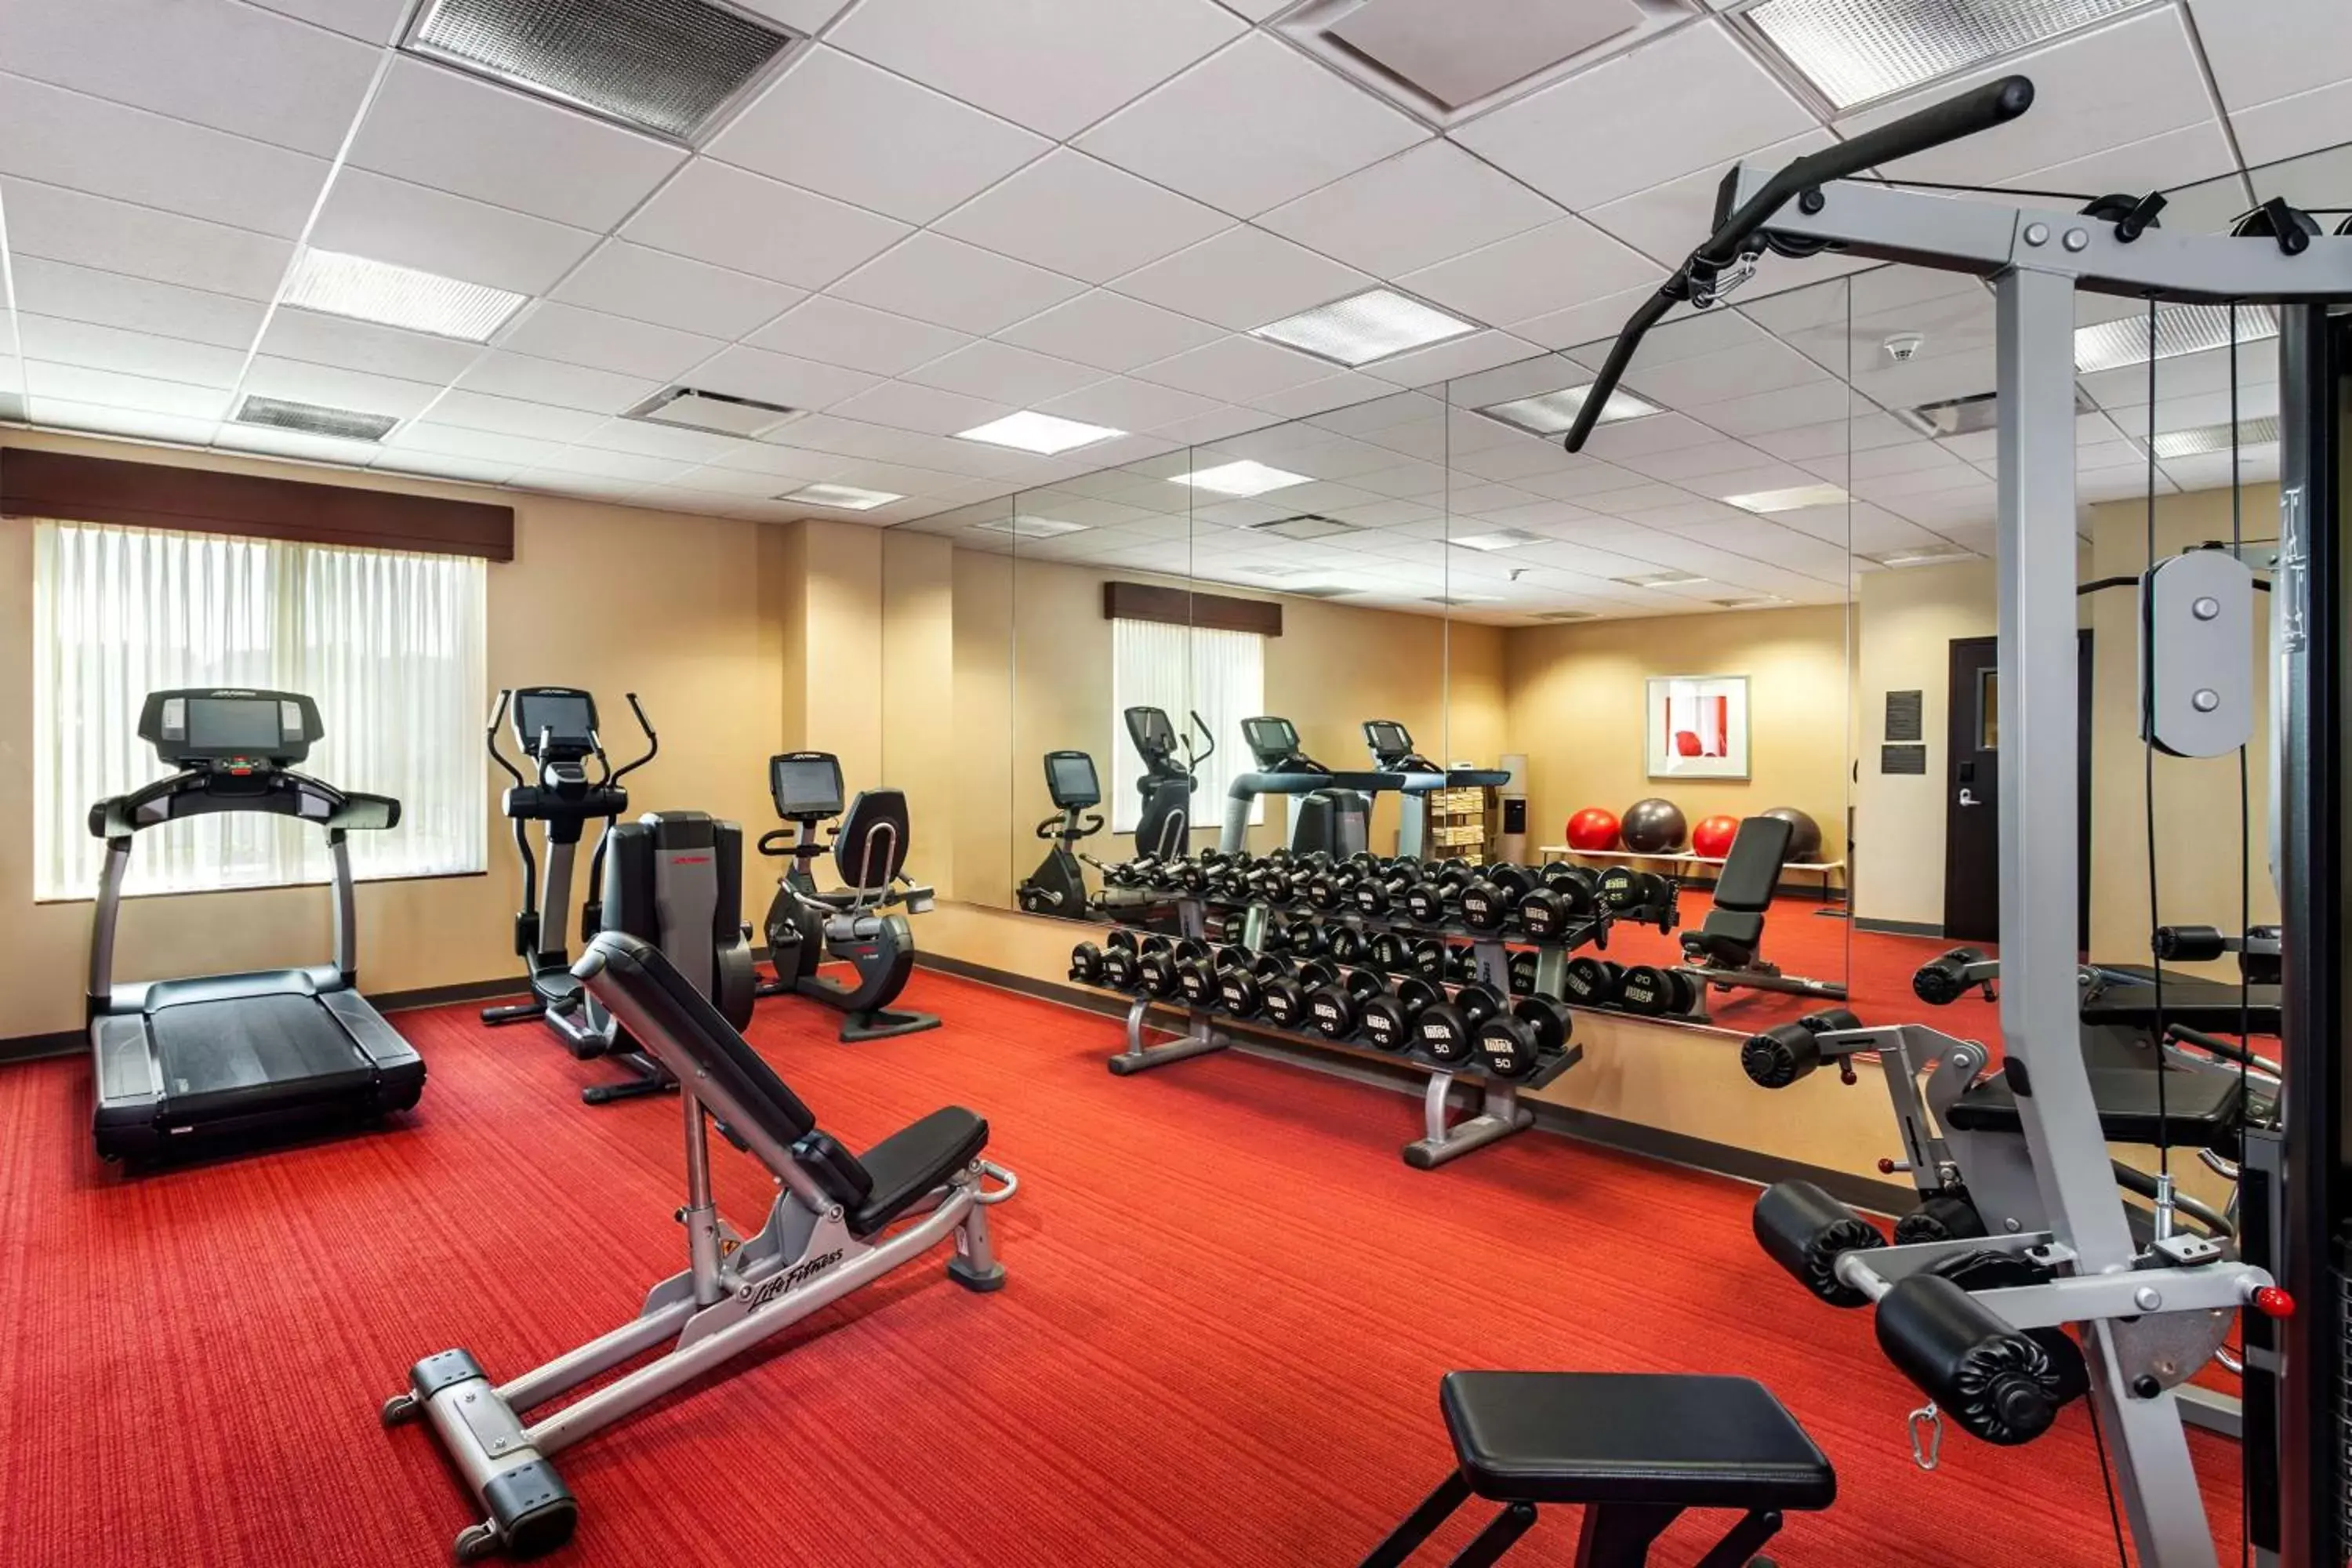 Fitness centre/facilities, Fitness Center/Facilities in Hyatt Place San Diego-Vista/Carlsbad